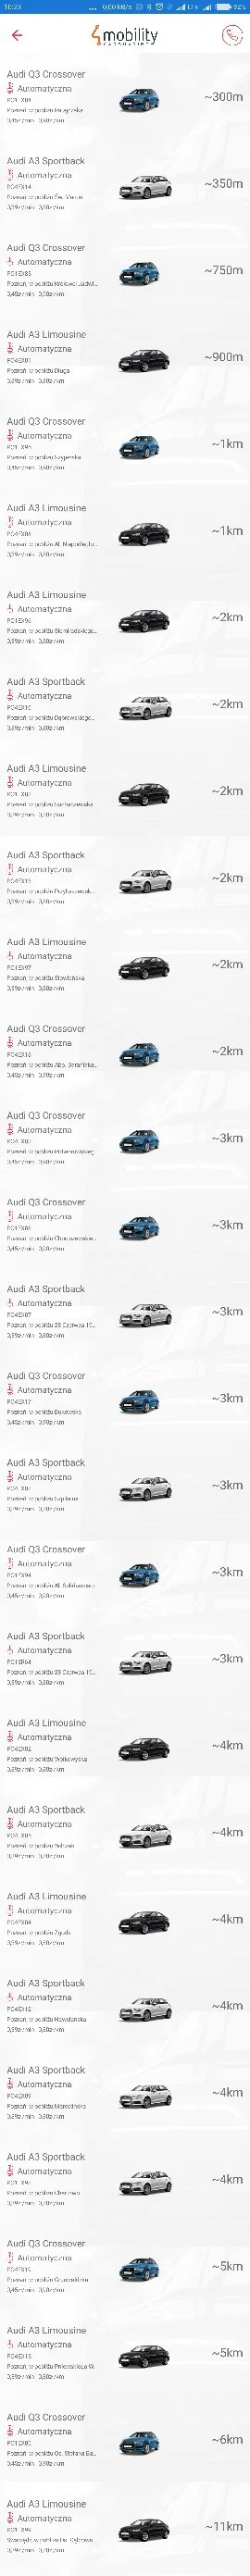 kendi - W Poznaniu pojawił się nowy operator aut #carsharing
 Stoją same #audi A3 w d...